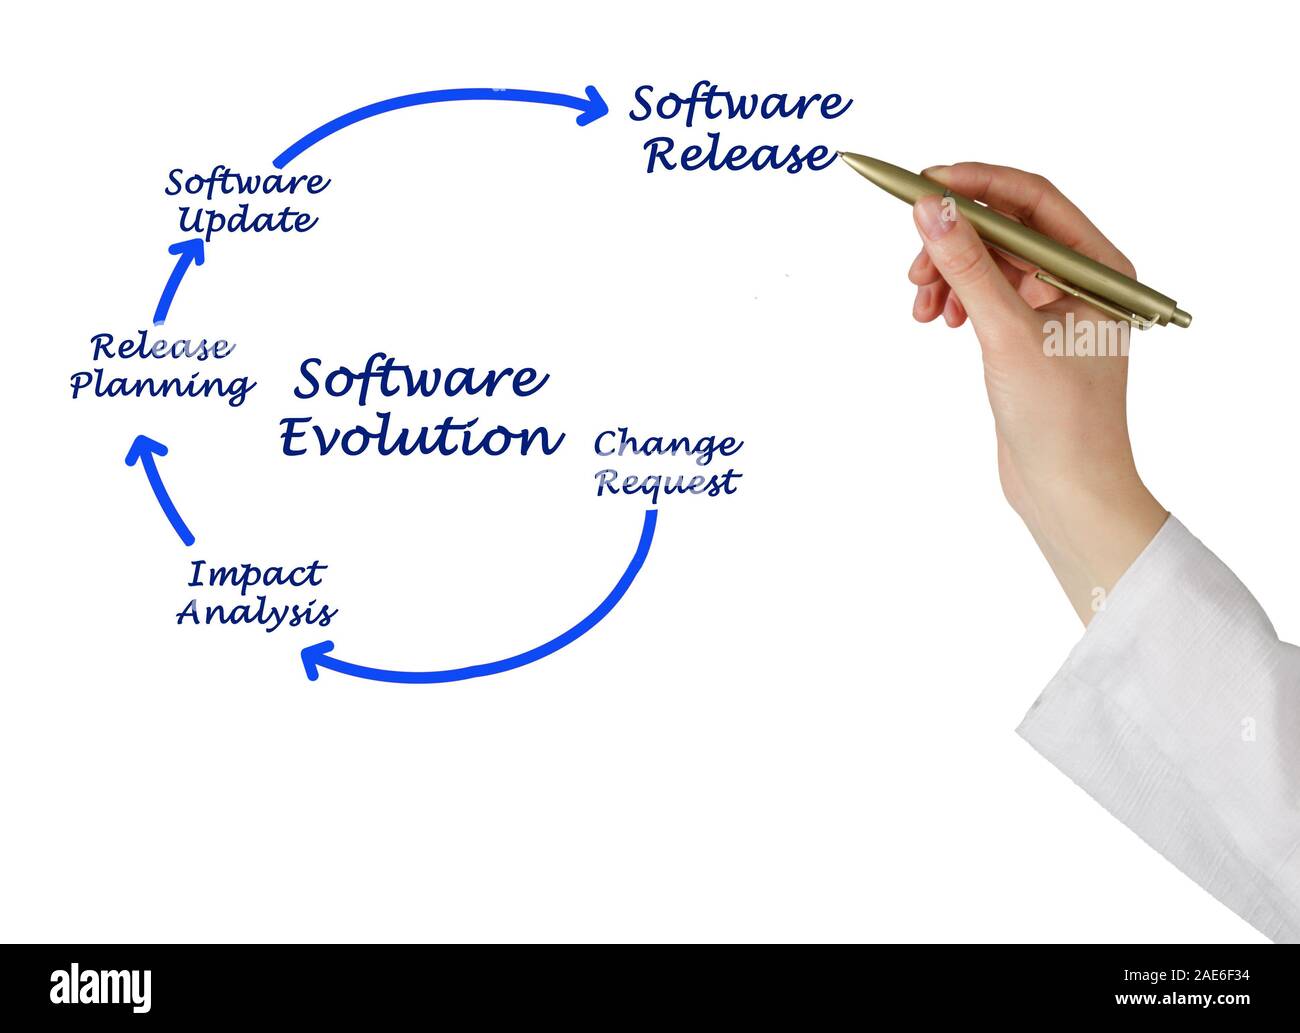 evolution software download